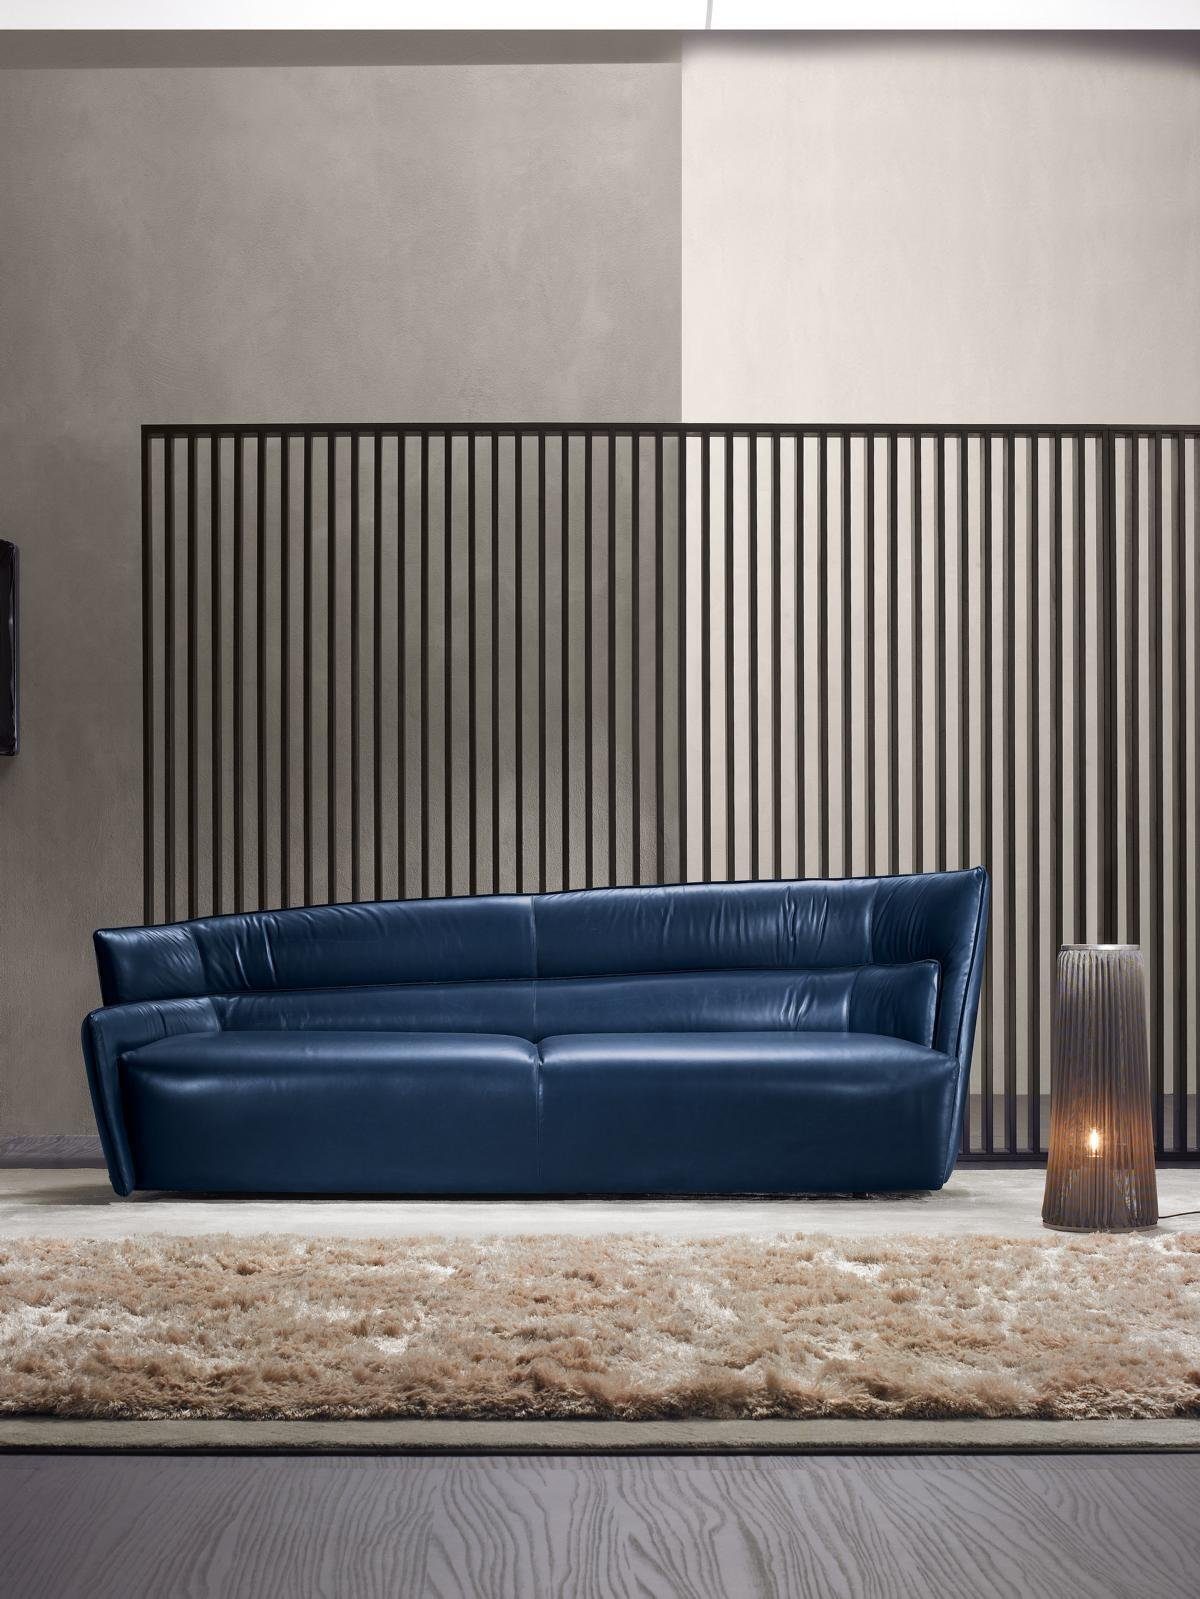 JVmoebel Sofa Sofa 3 Sitz Couch Leder Weiß Wohnzimmer möbel Sofas Couch Blau